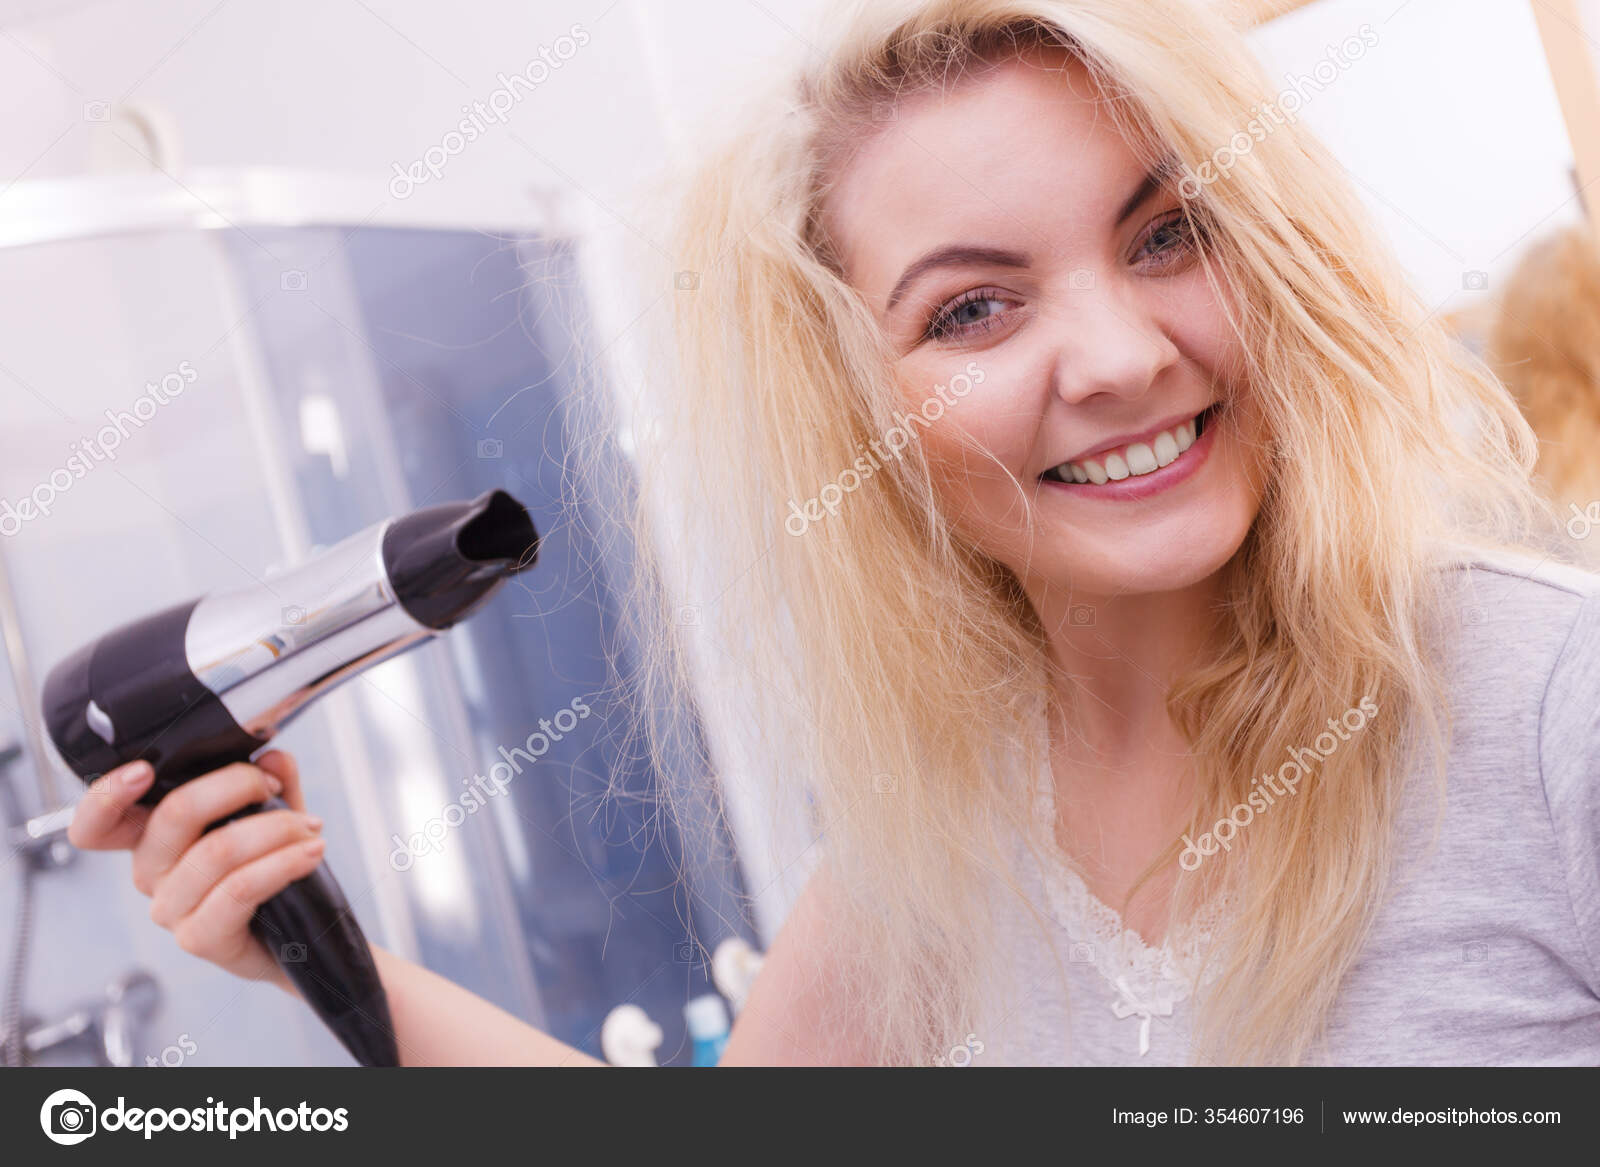 Mão de menina segurando o secador de cabelo.